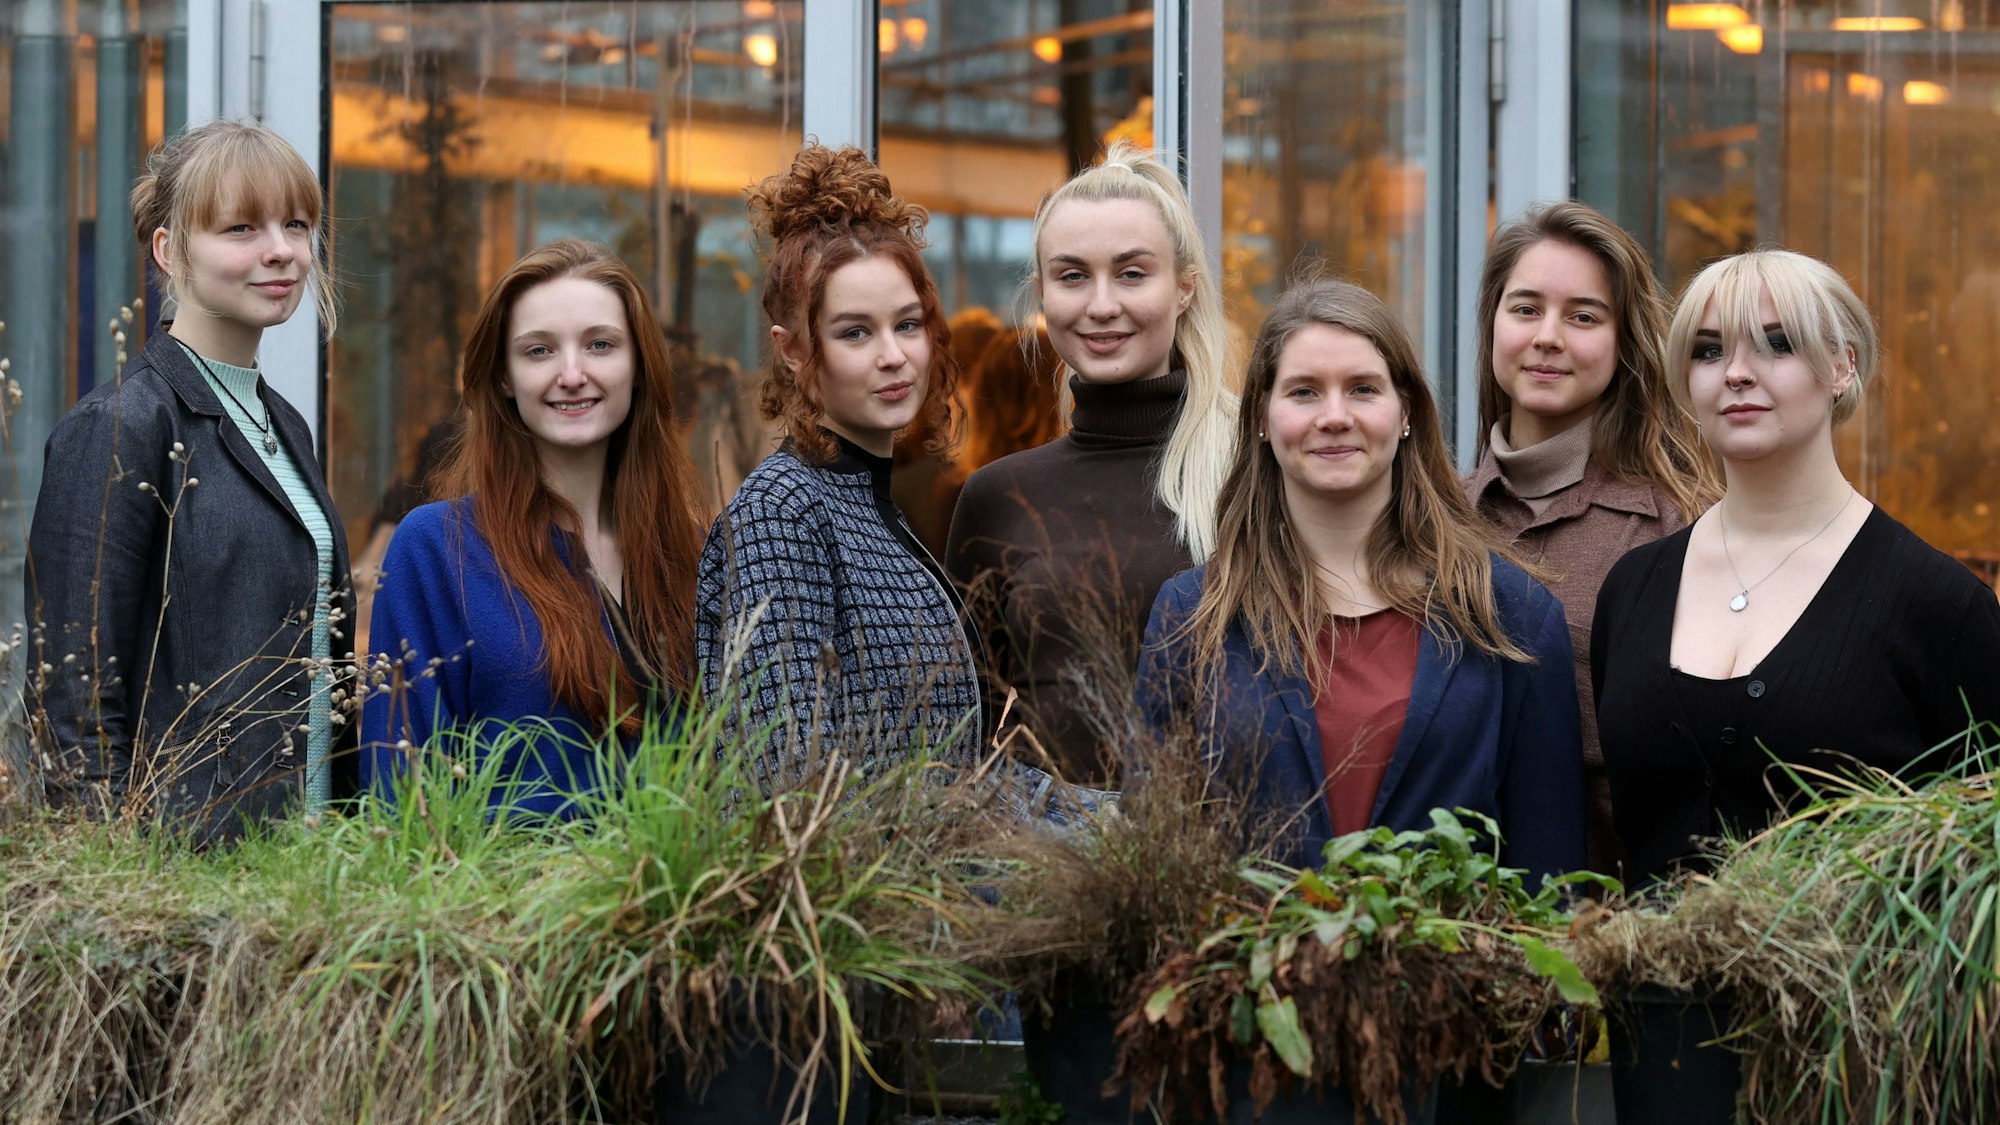 Das Bild zeigt vier der ukrainischen Studentinnen und zwei Studentinnen von der Universität zu Köln mit Projektleiterin Isabelle Metzen.